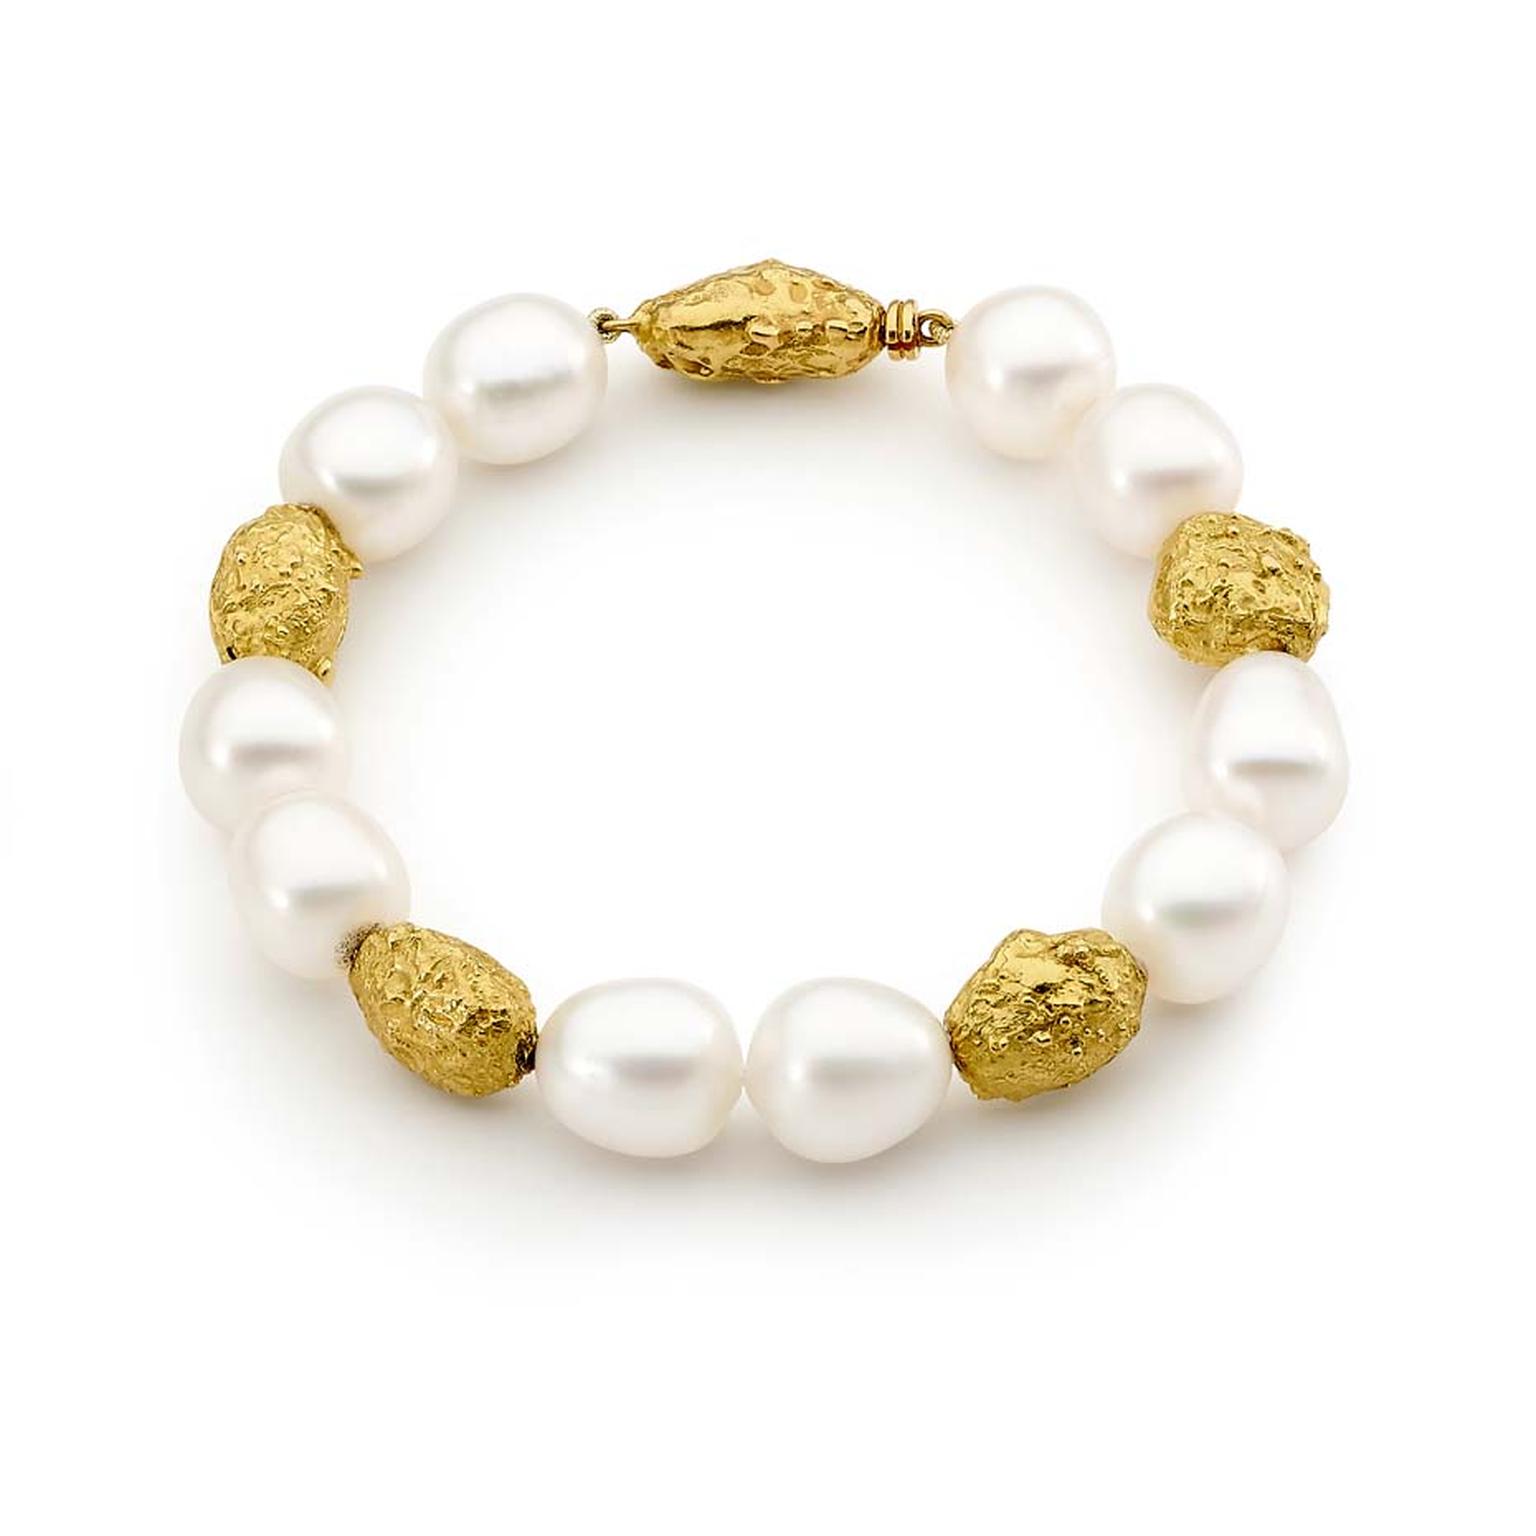 Australian Pearls_Linneys_yellow gold Australian South Sea pearl bracelet $8,500.jpg